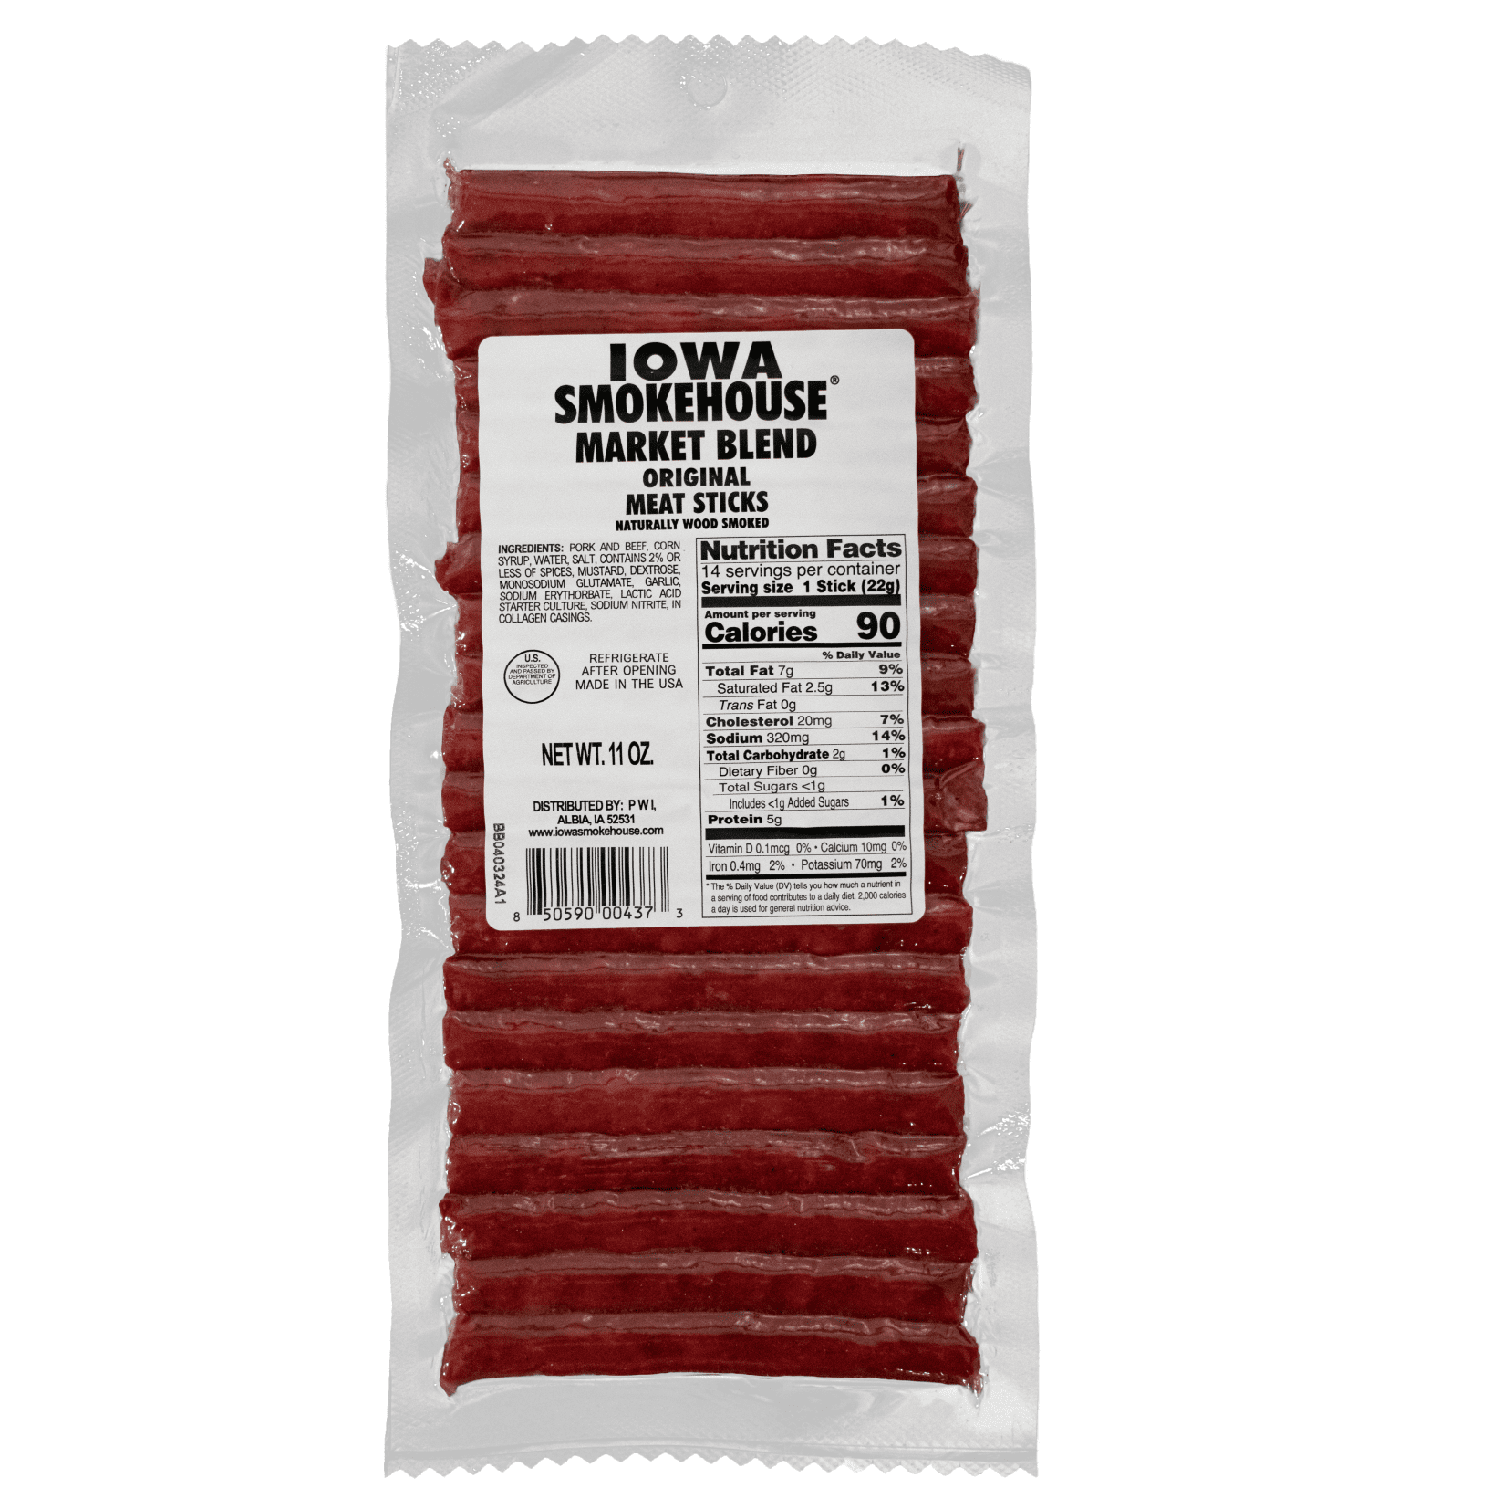 11 oz Market Blend Smoked Meat Sticks - IOWA